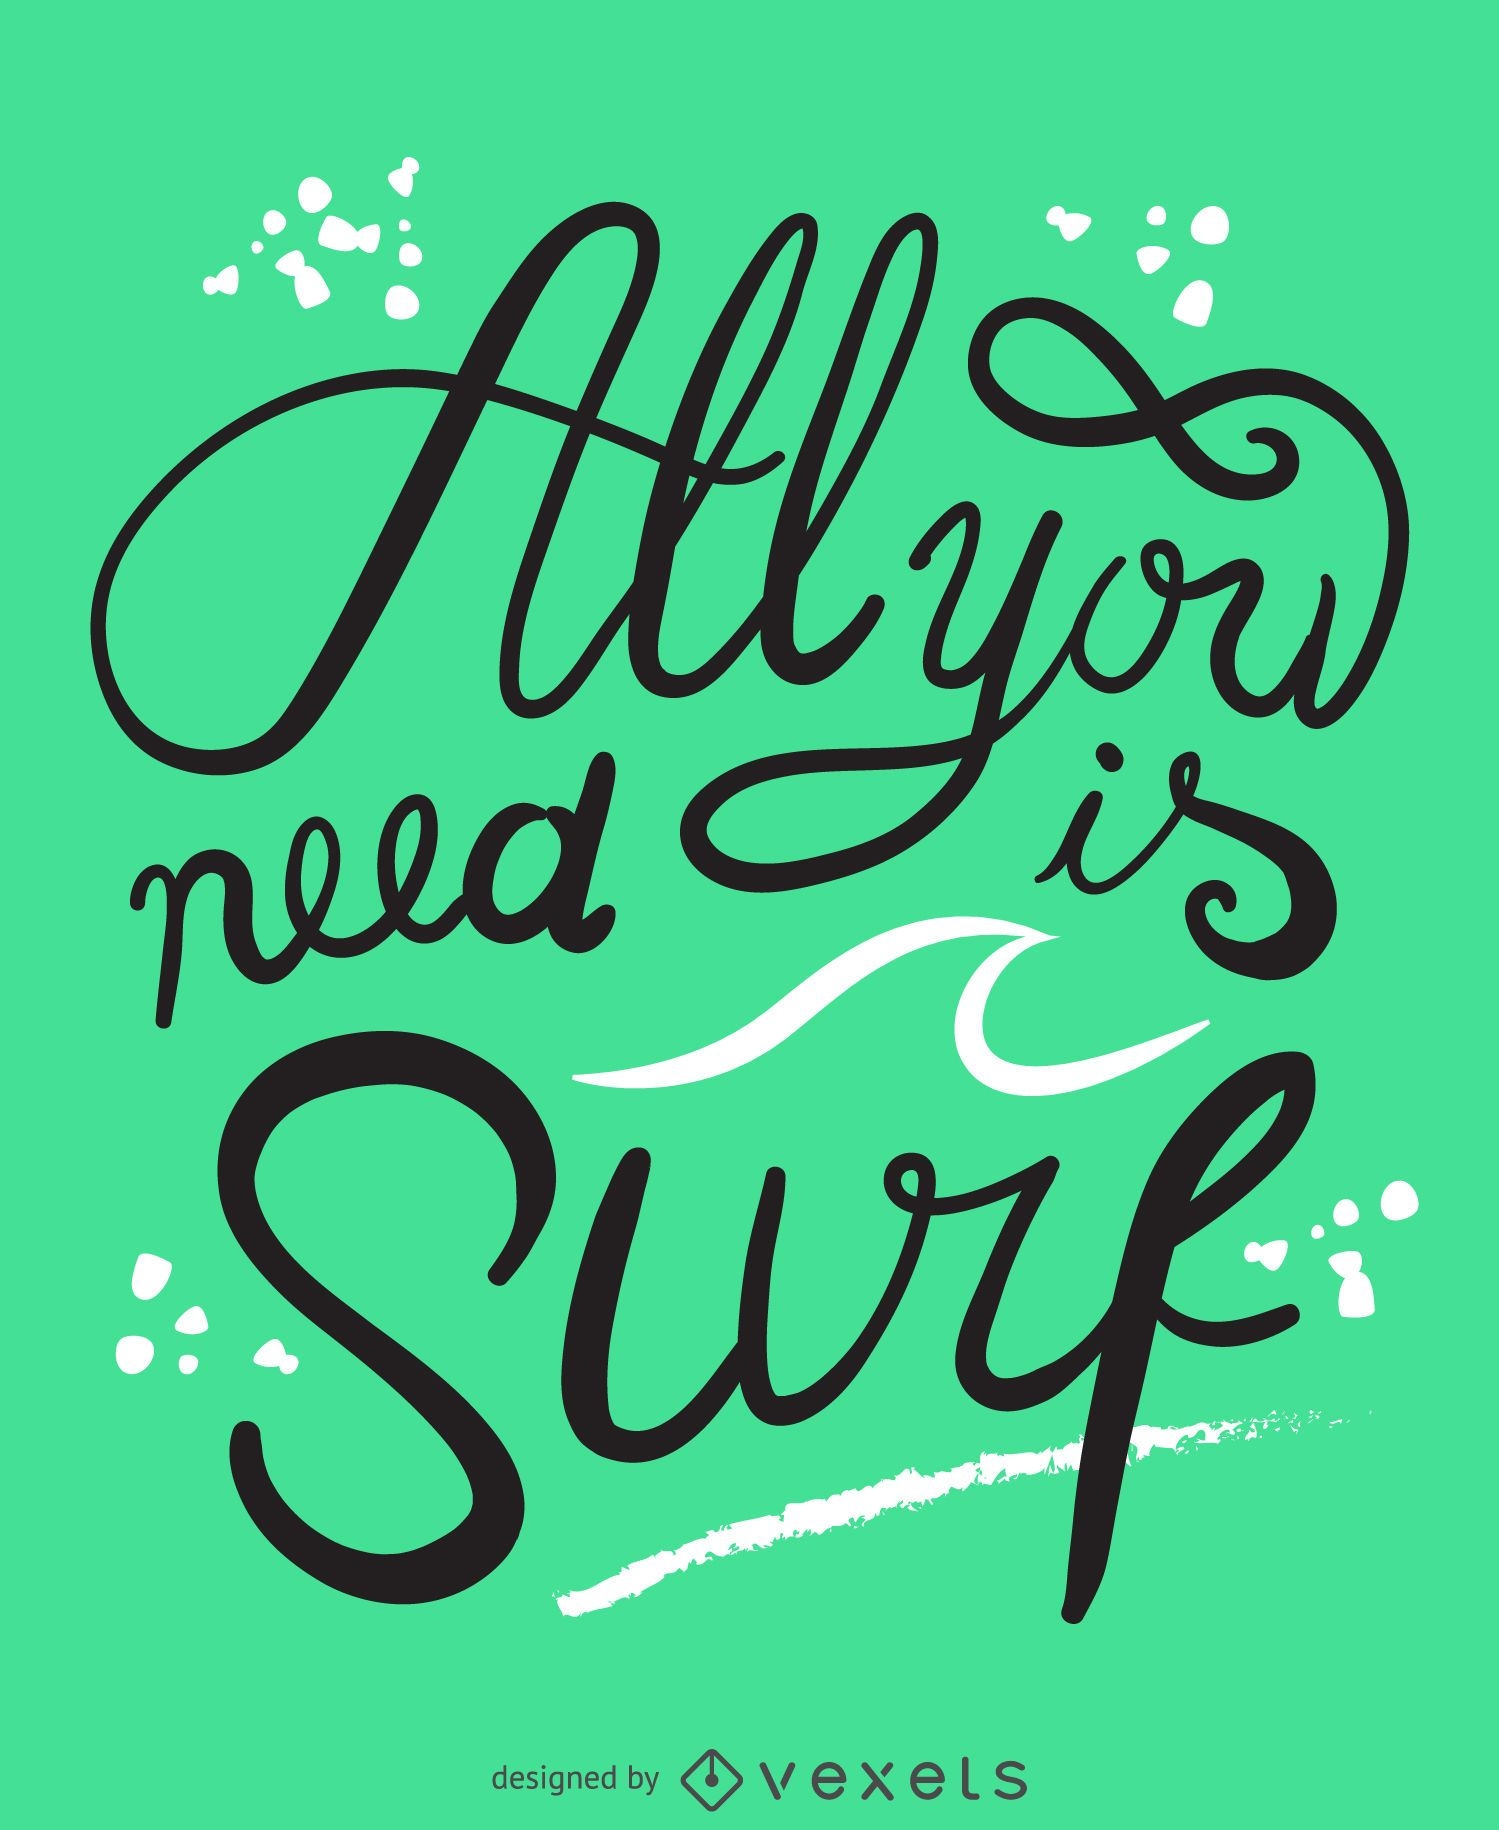 Todo lo que necesitas es un póster de surf.